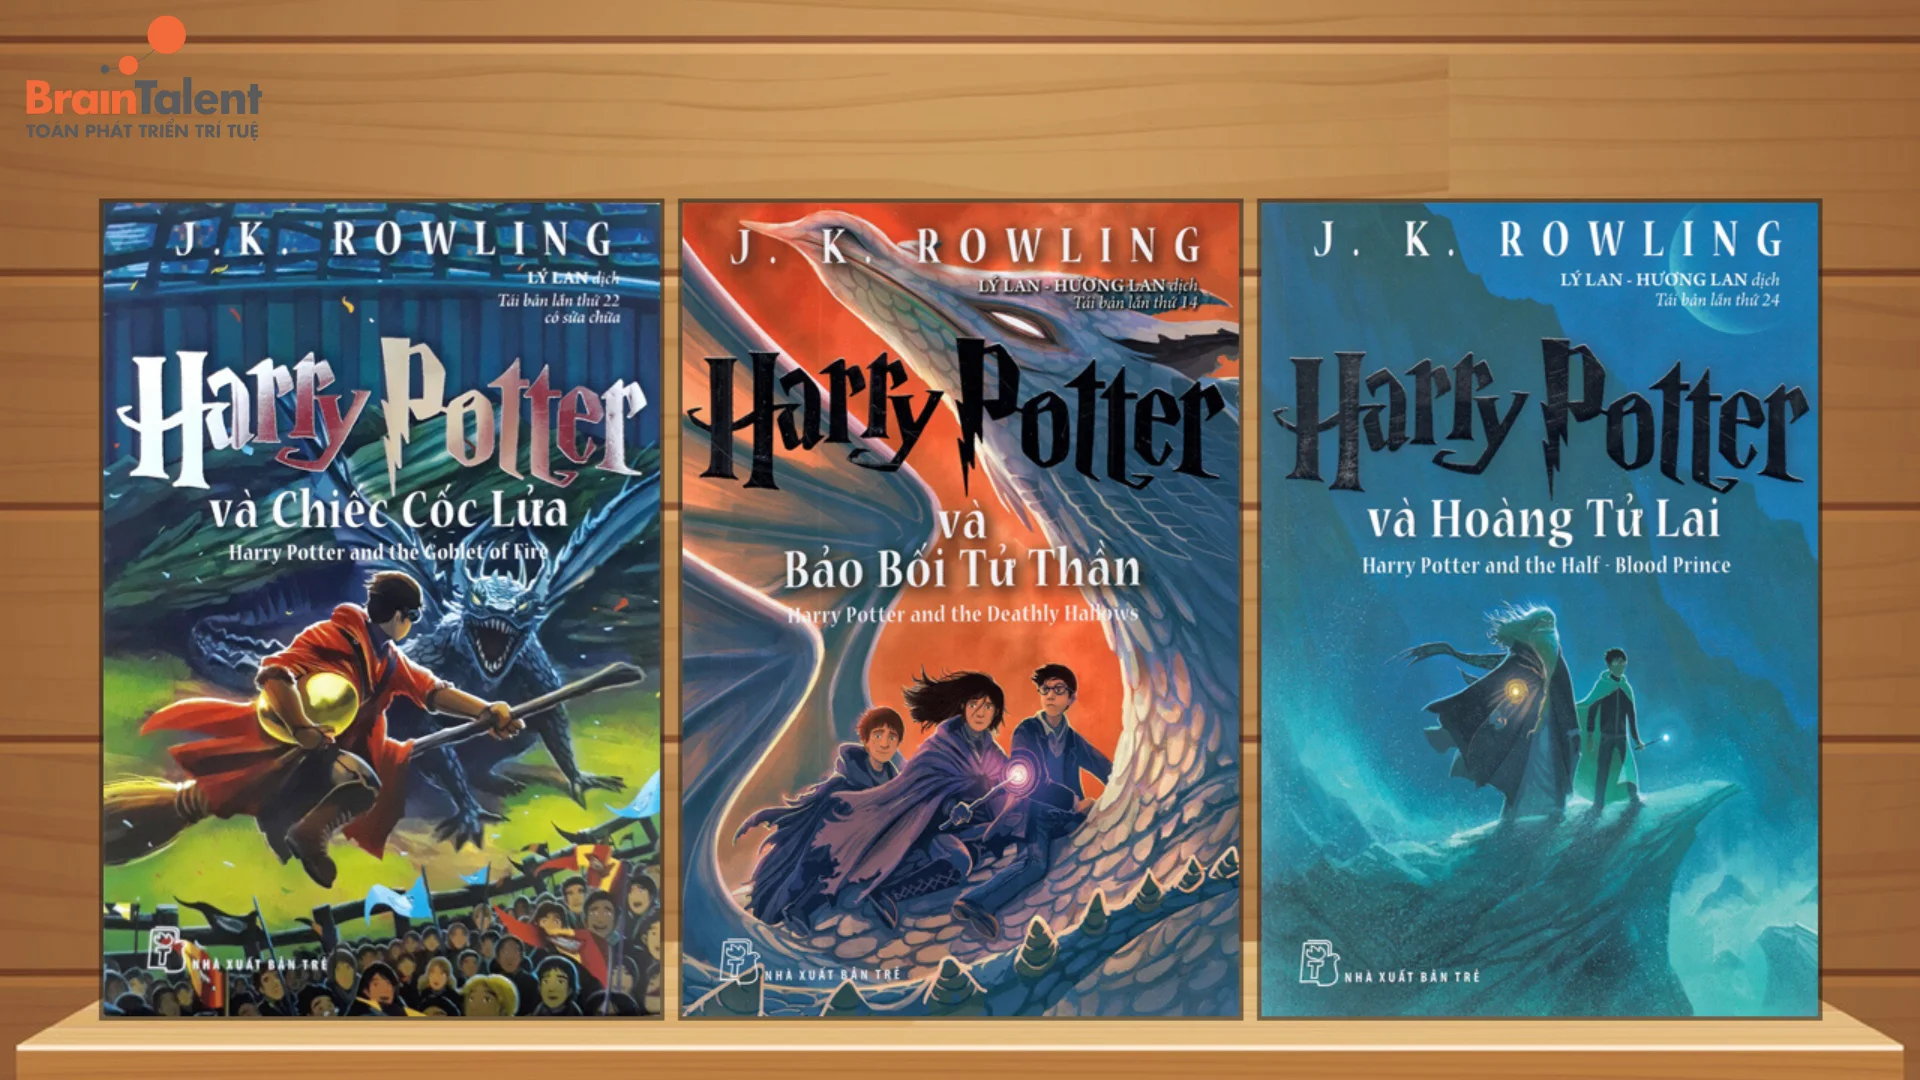 Trọn bộ 7 cuốn Harry Potter là tuổi thơ của biết bao thế hệ